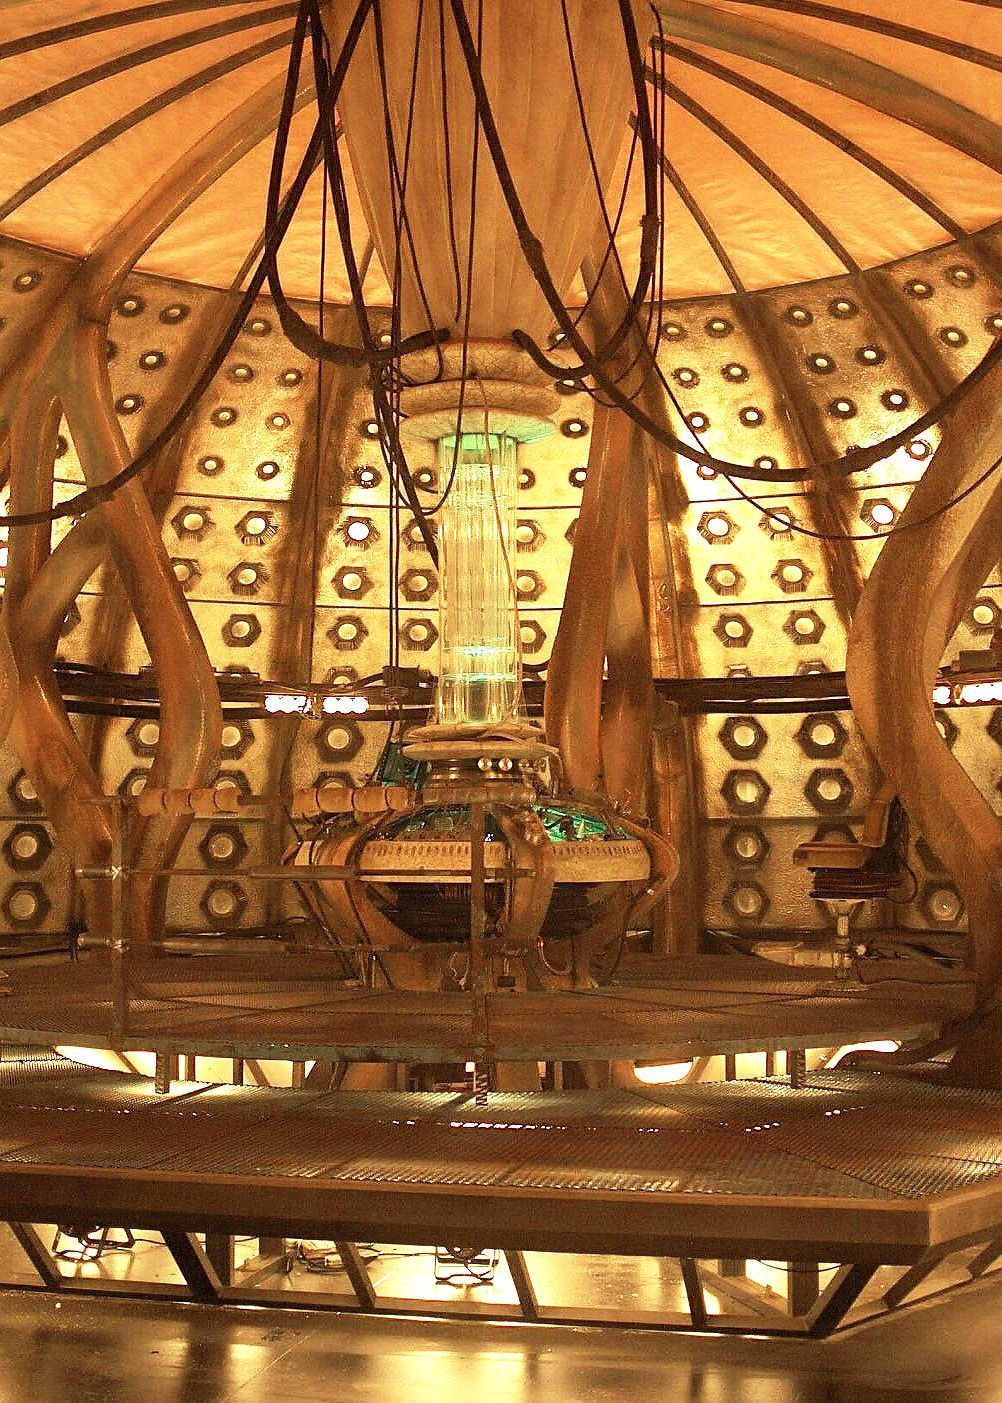 TARDIS interior. Doctor who wallpaper .com